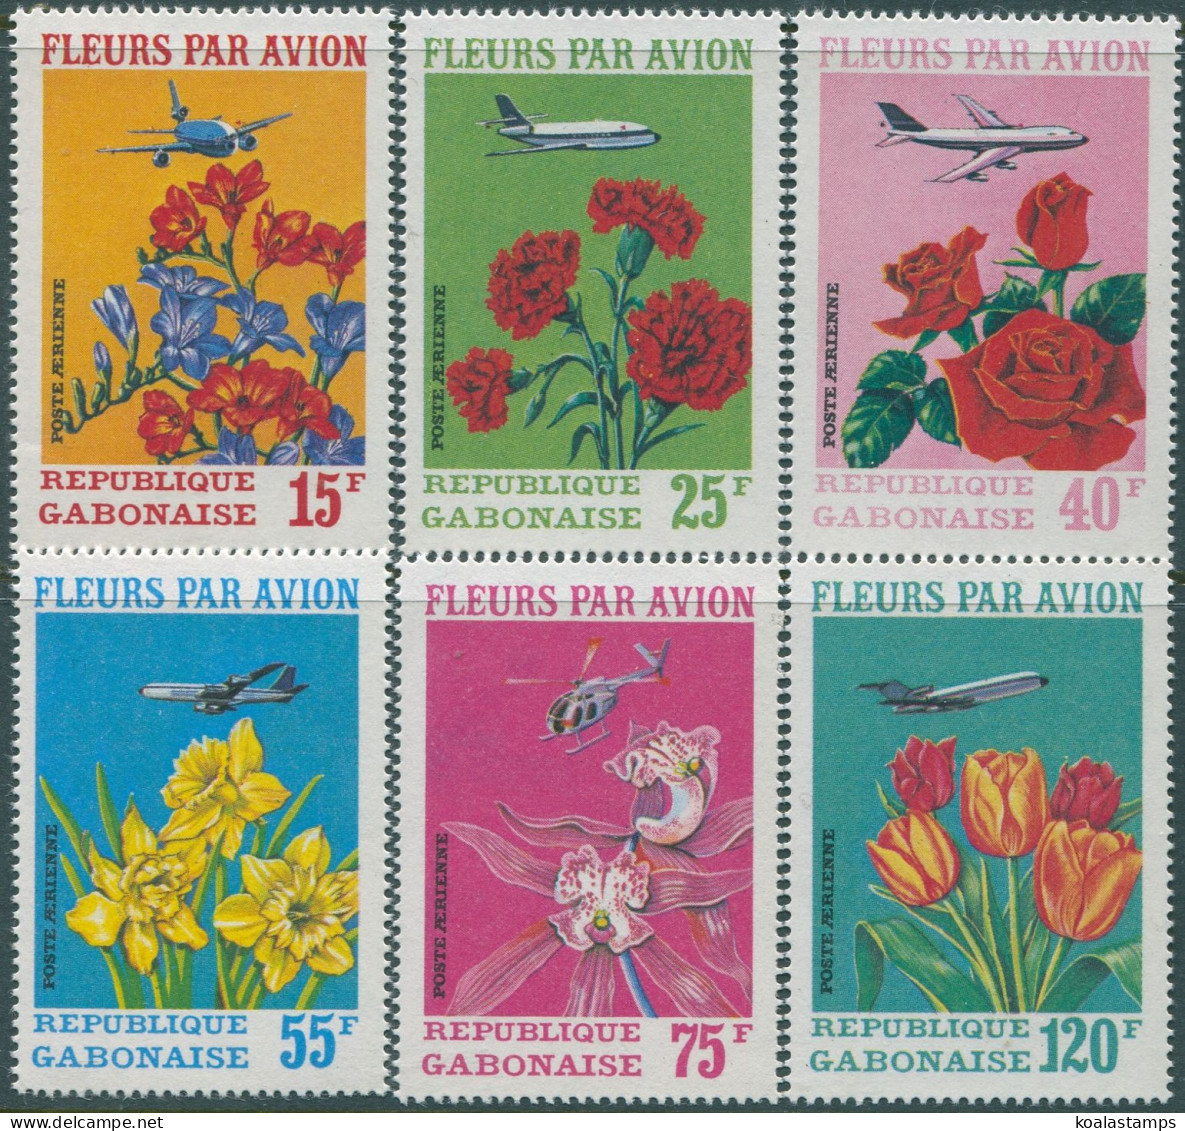 Gabon 1971 SG410-415 Flowers Set MNH - Gabun (1960-...)